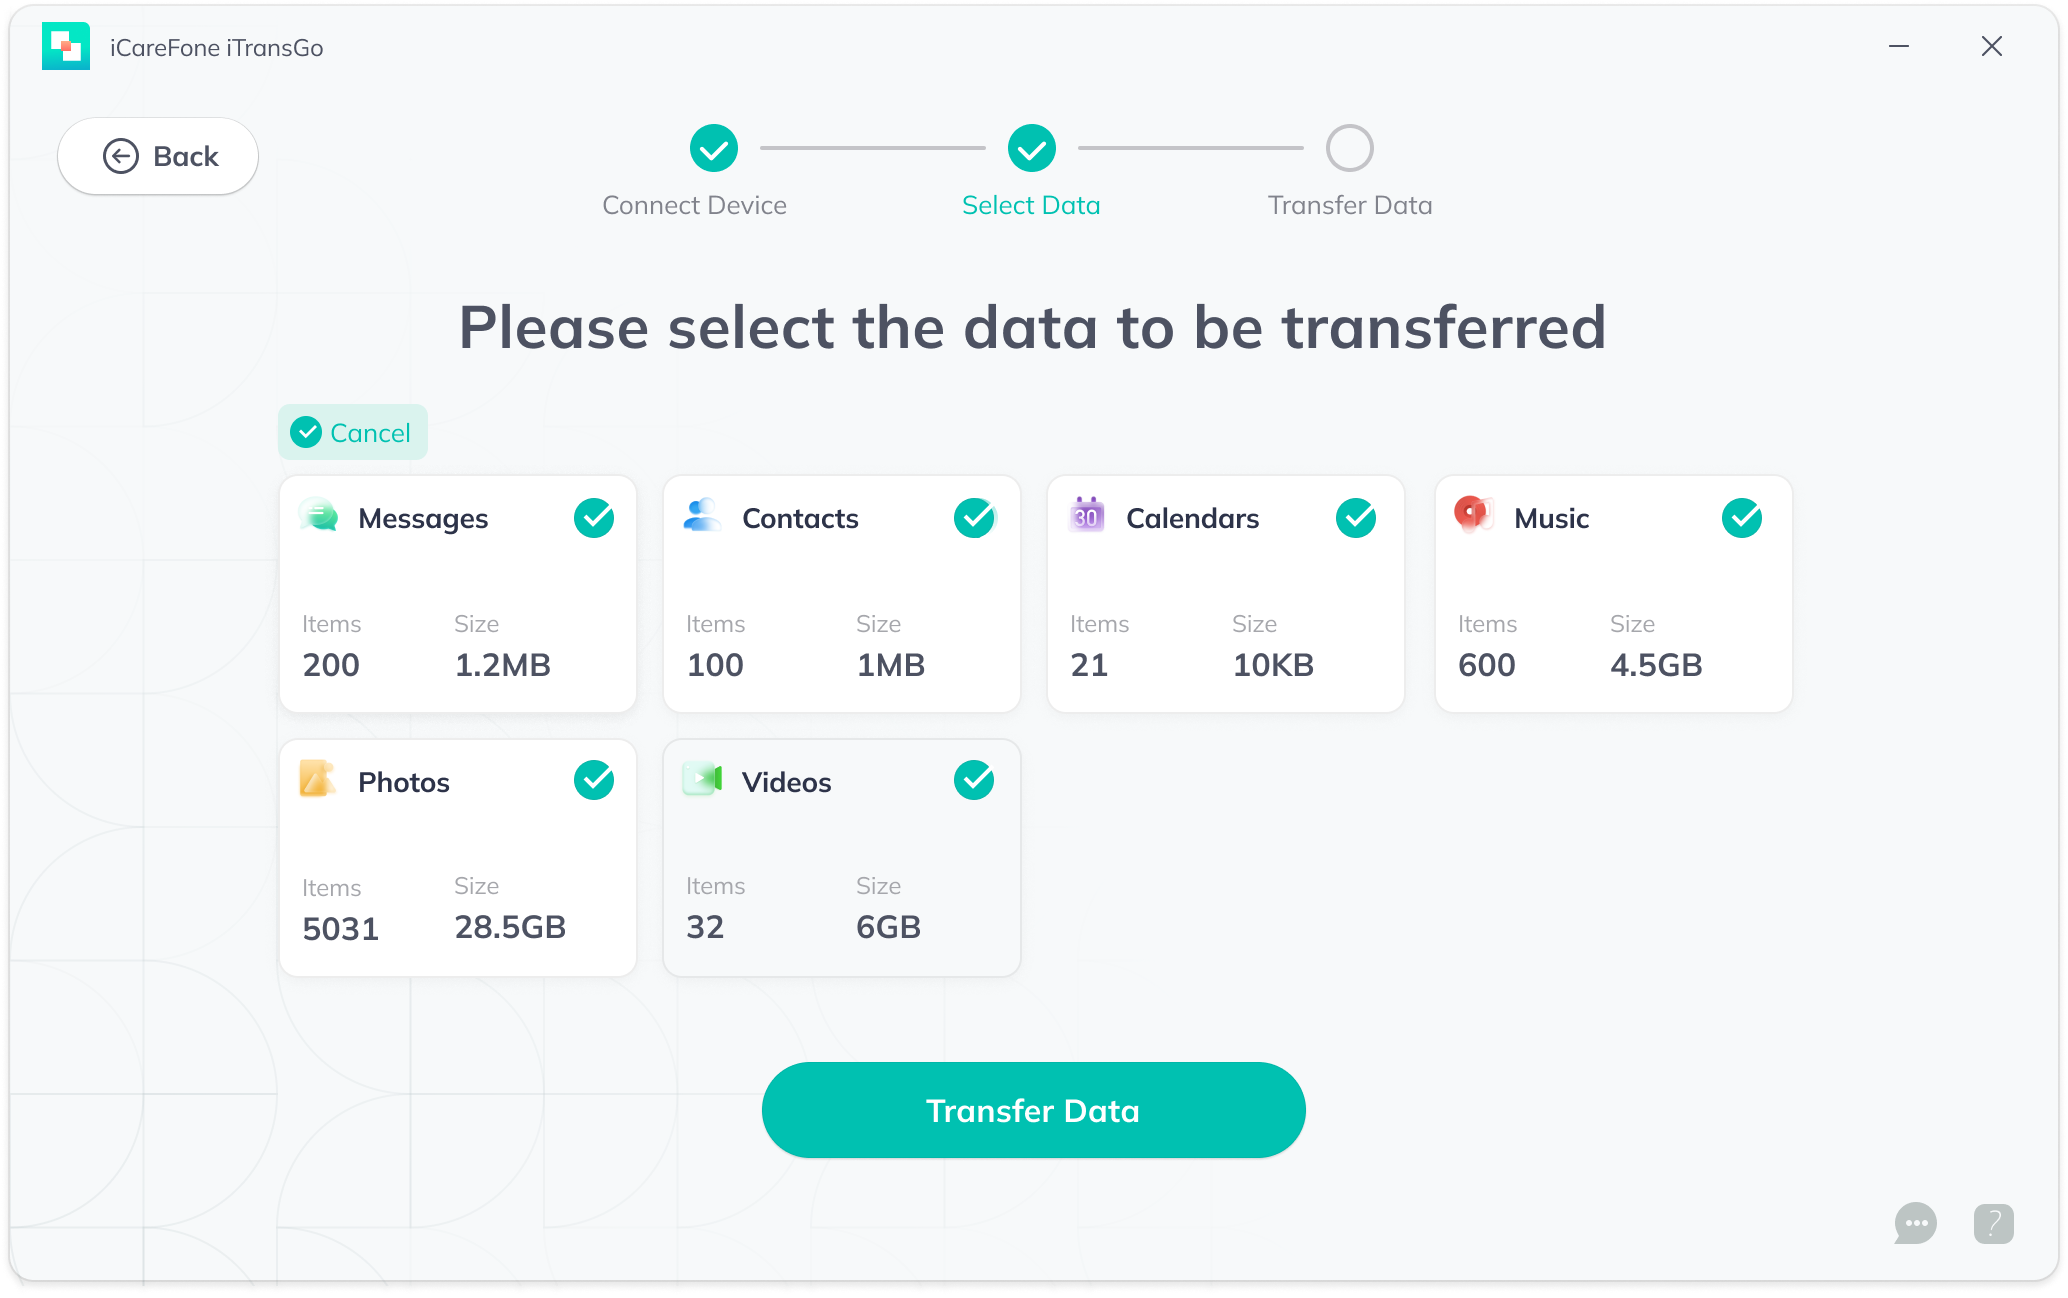 Select Data for Transfer